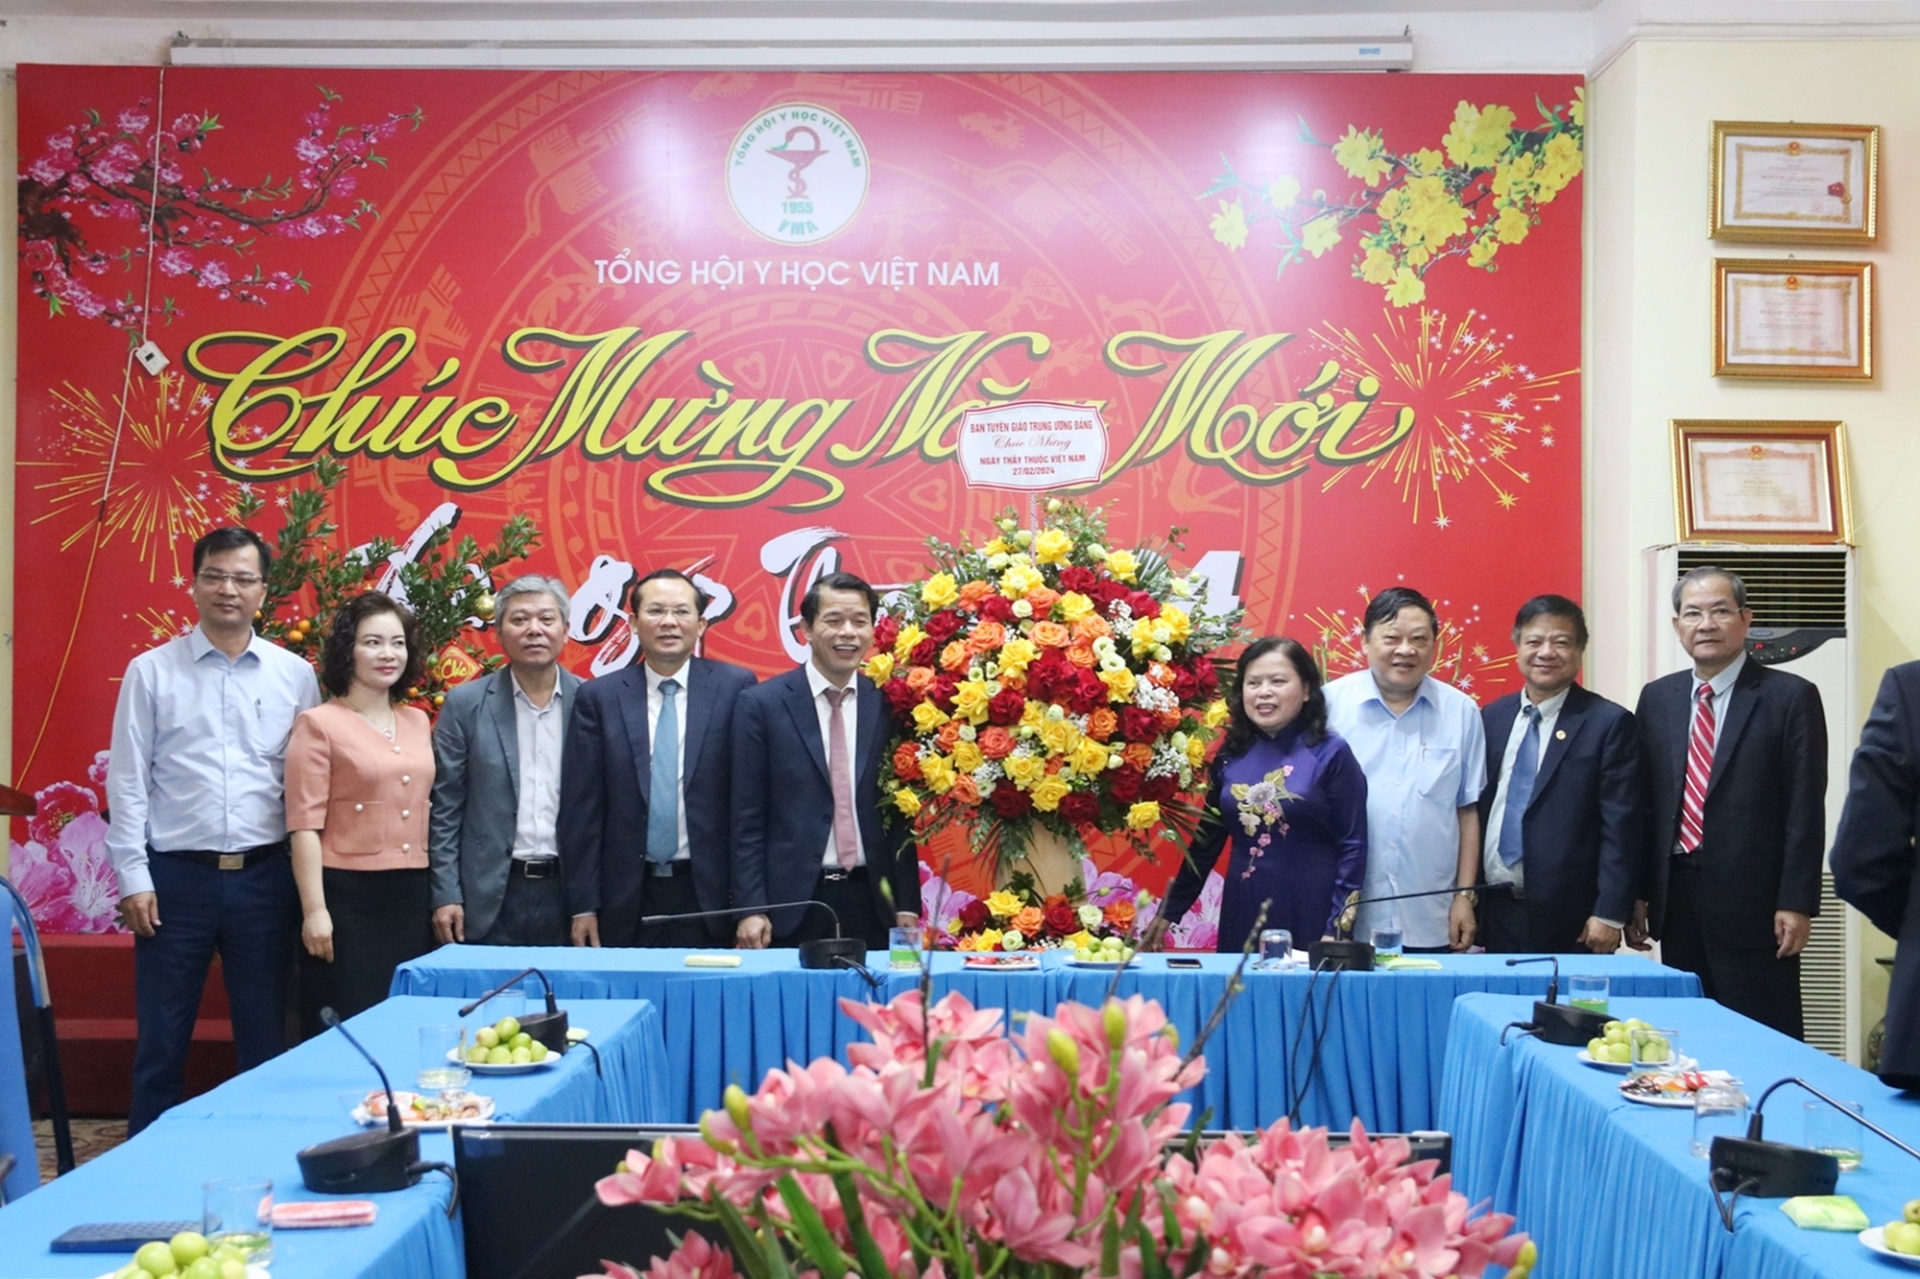 Đồng chí Vũ Thanh Mai chúc mừng Tổng hội Y học Việt Nam.